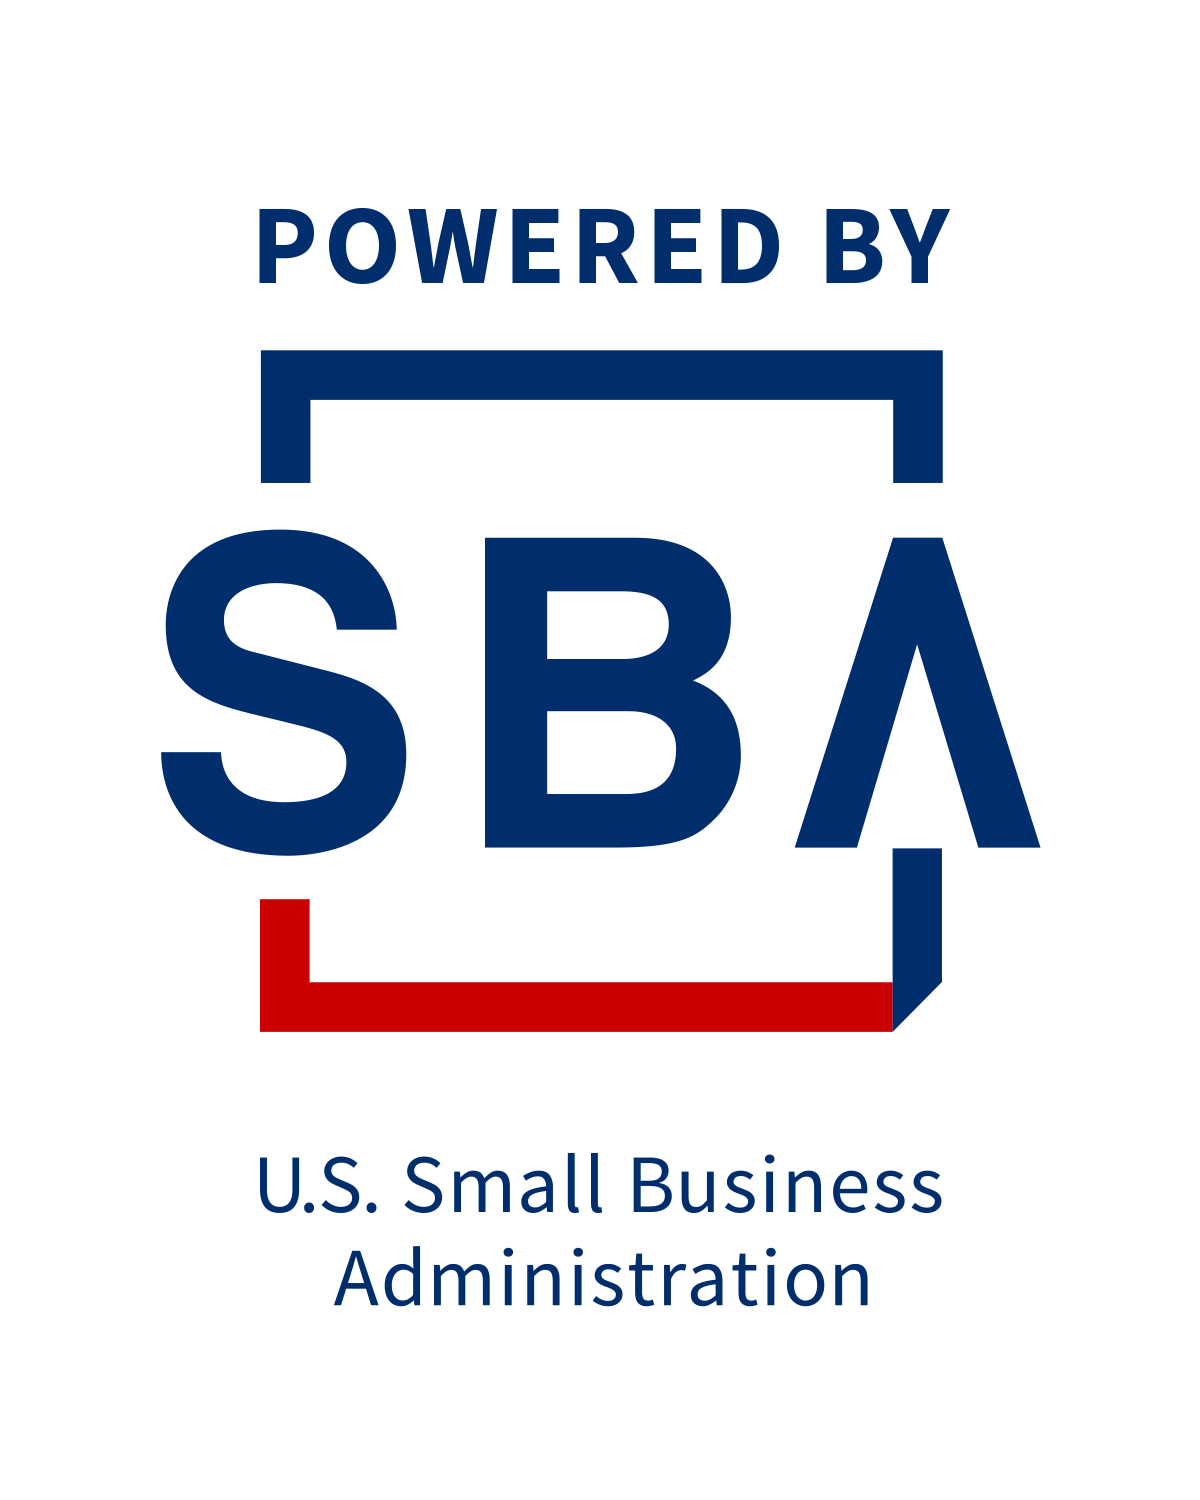 SBA.gov logo